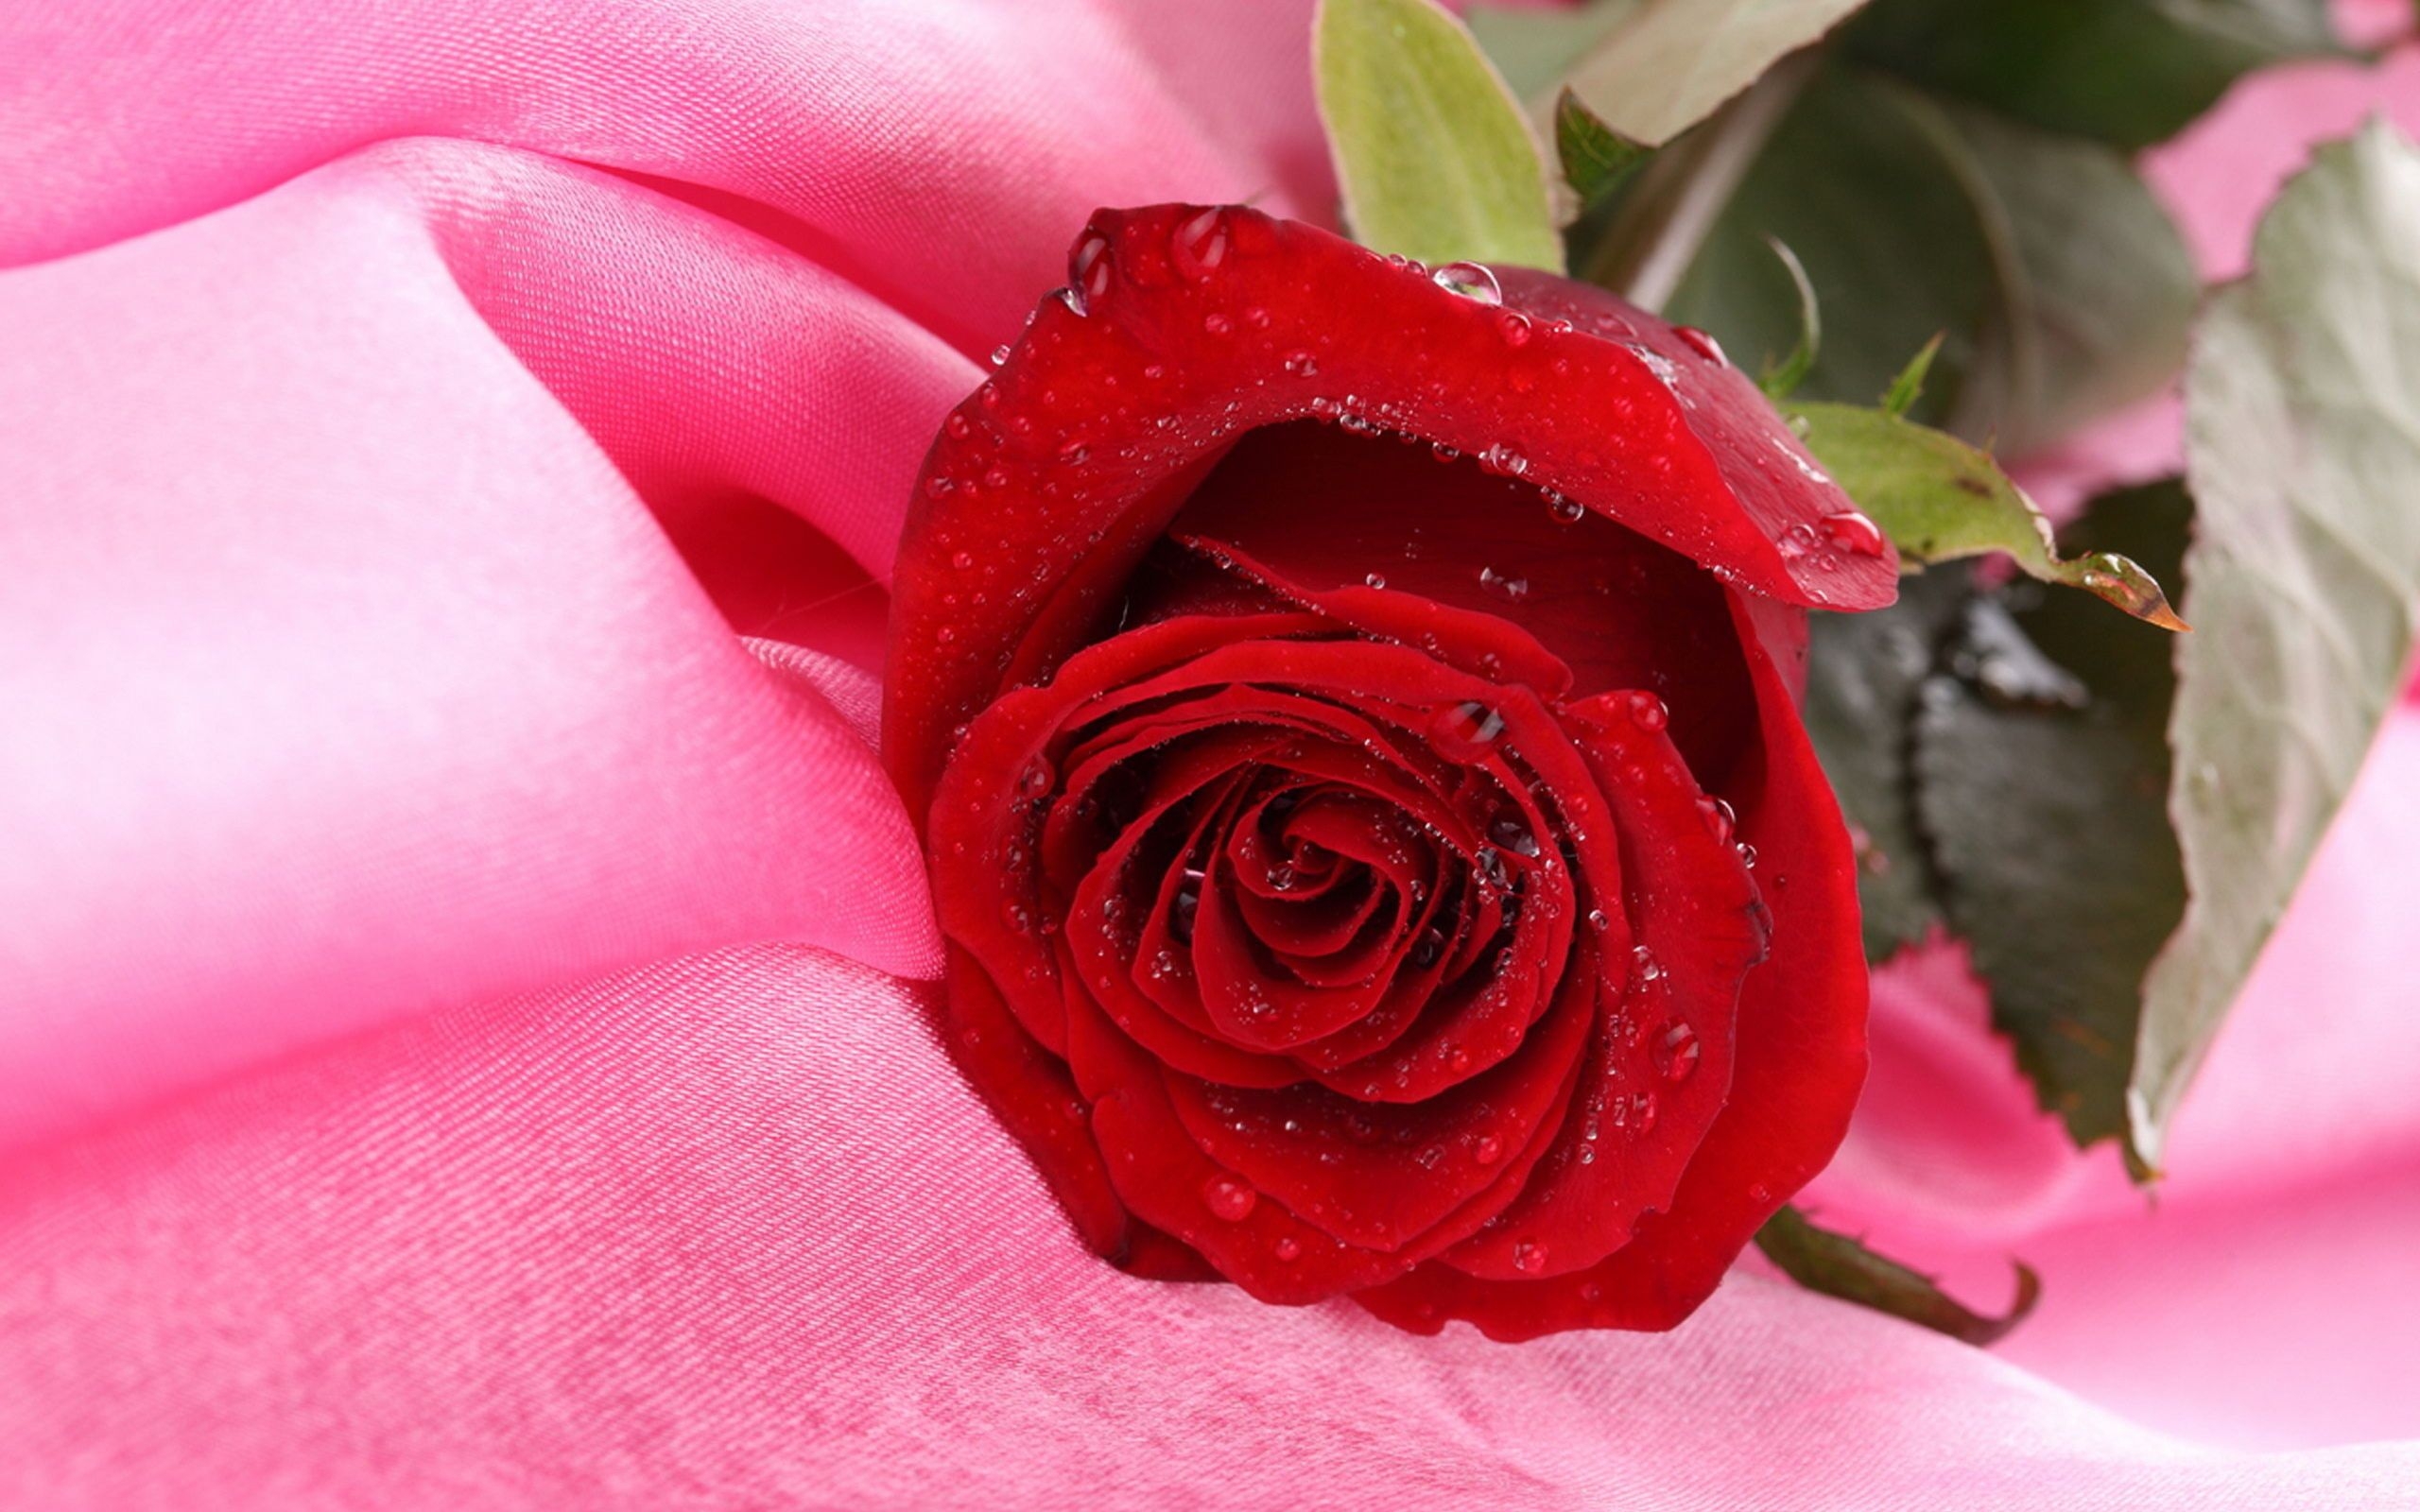 35923 обои 720x1280 на телефон бесплатно, скачать картинки розы, красные, цветы, растения 720x1280 на мобильный